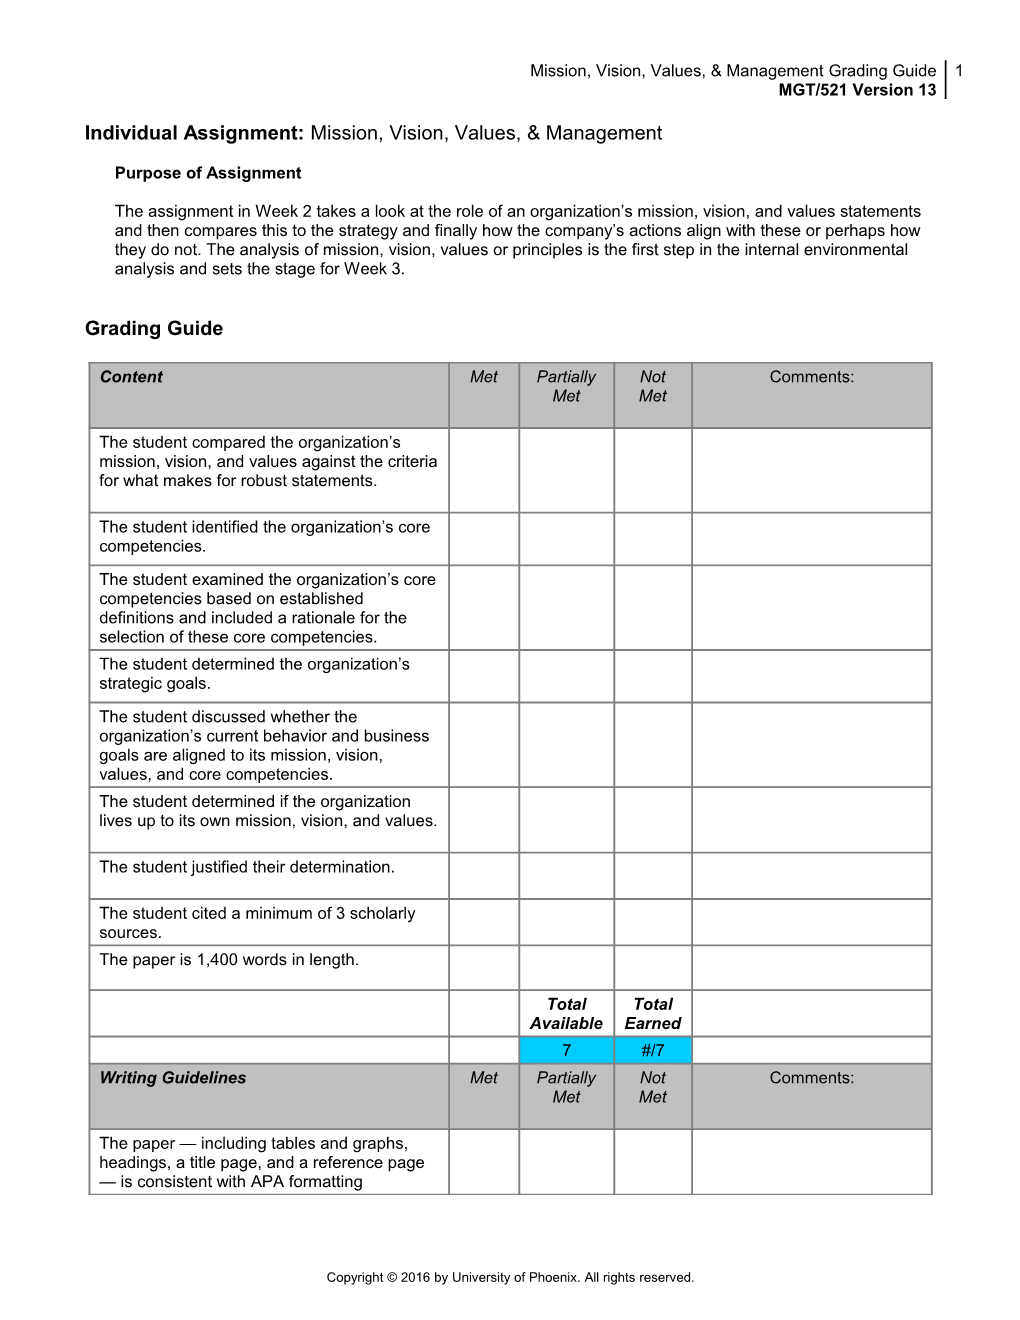 Paper Grading Guide s4